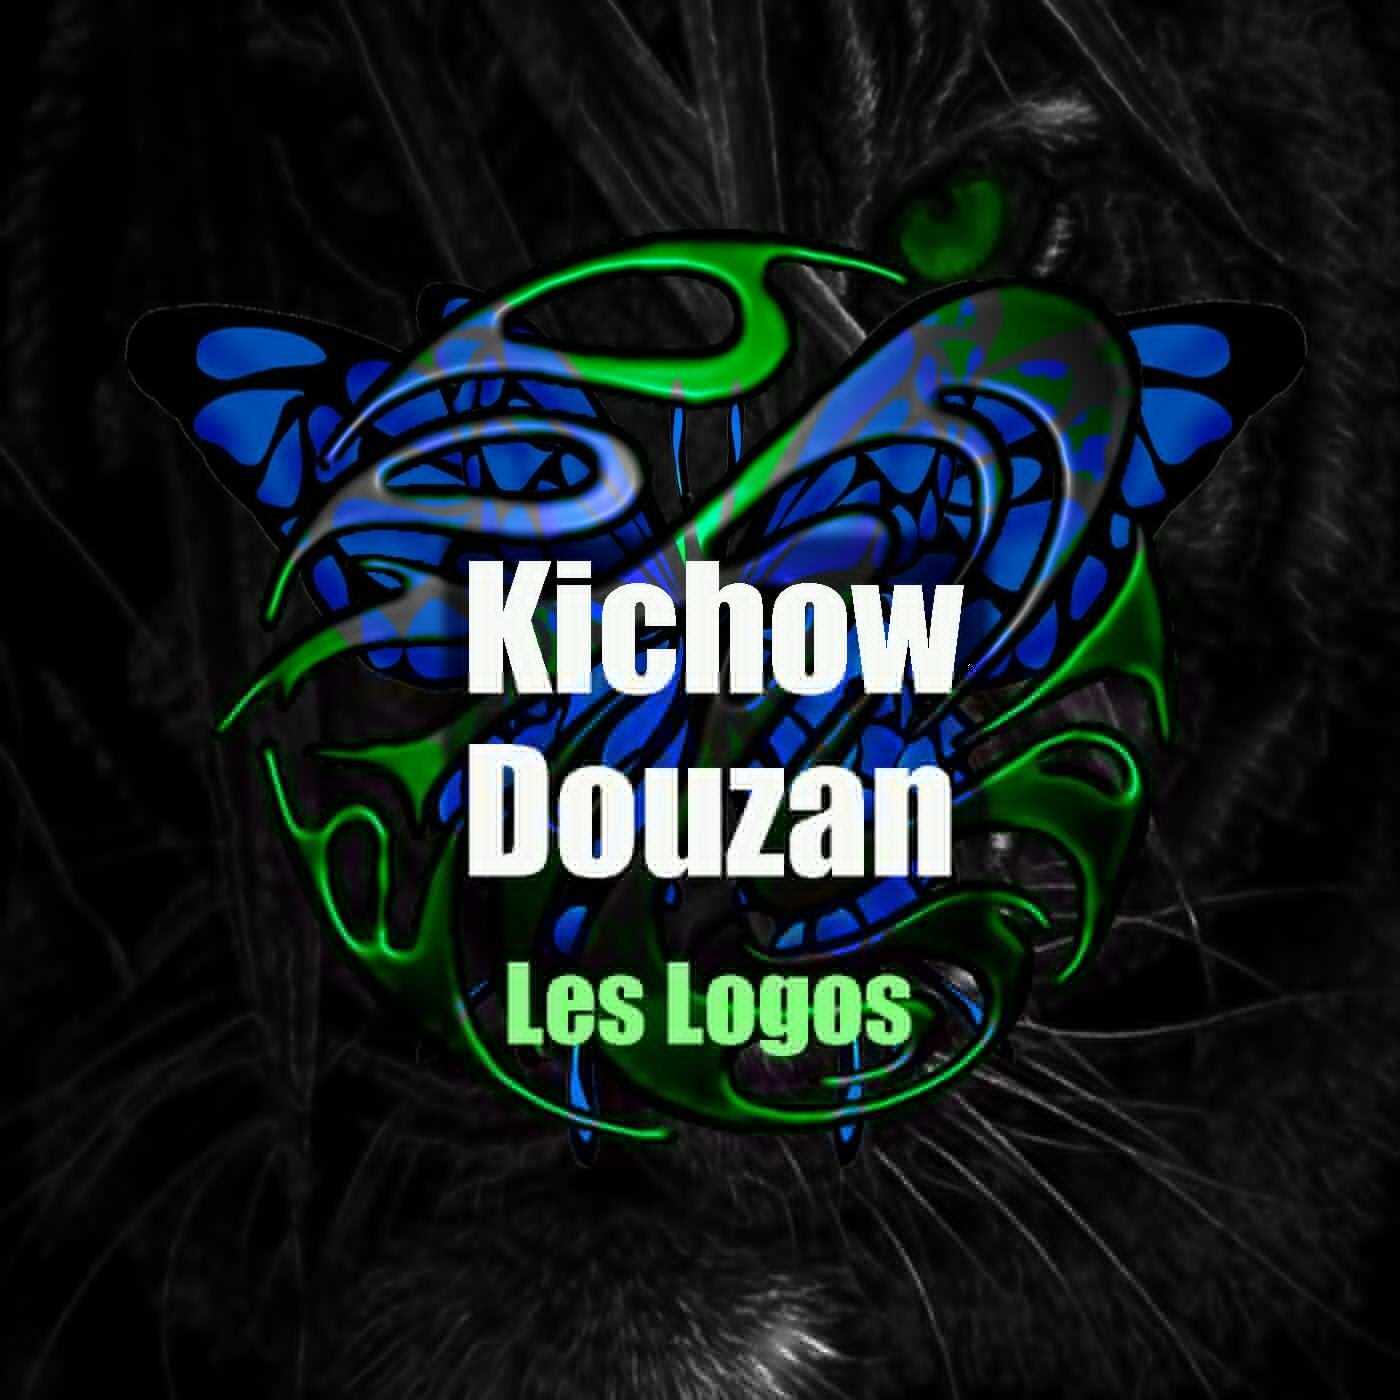 Kichow / Douzan